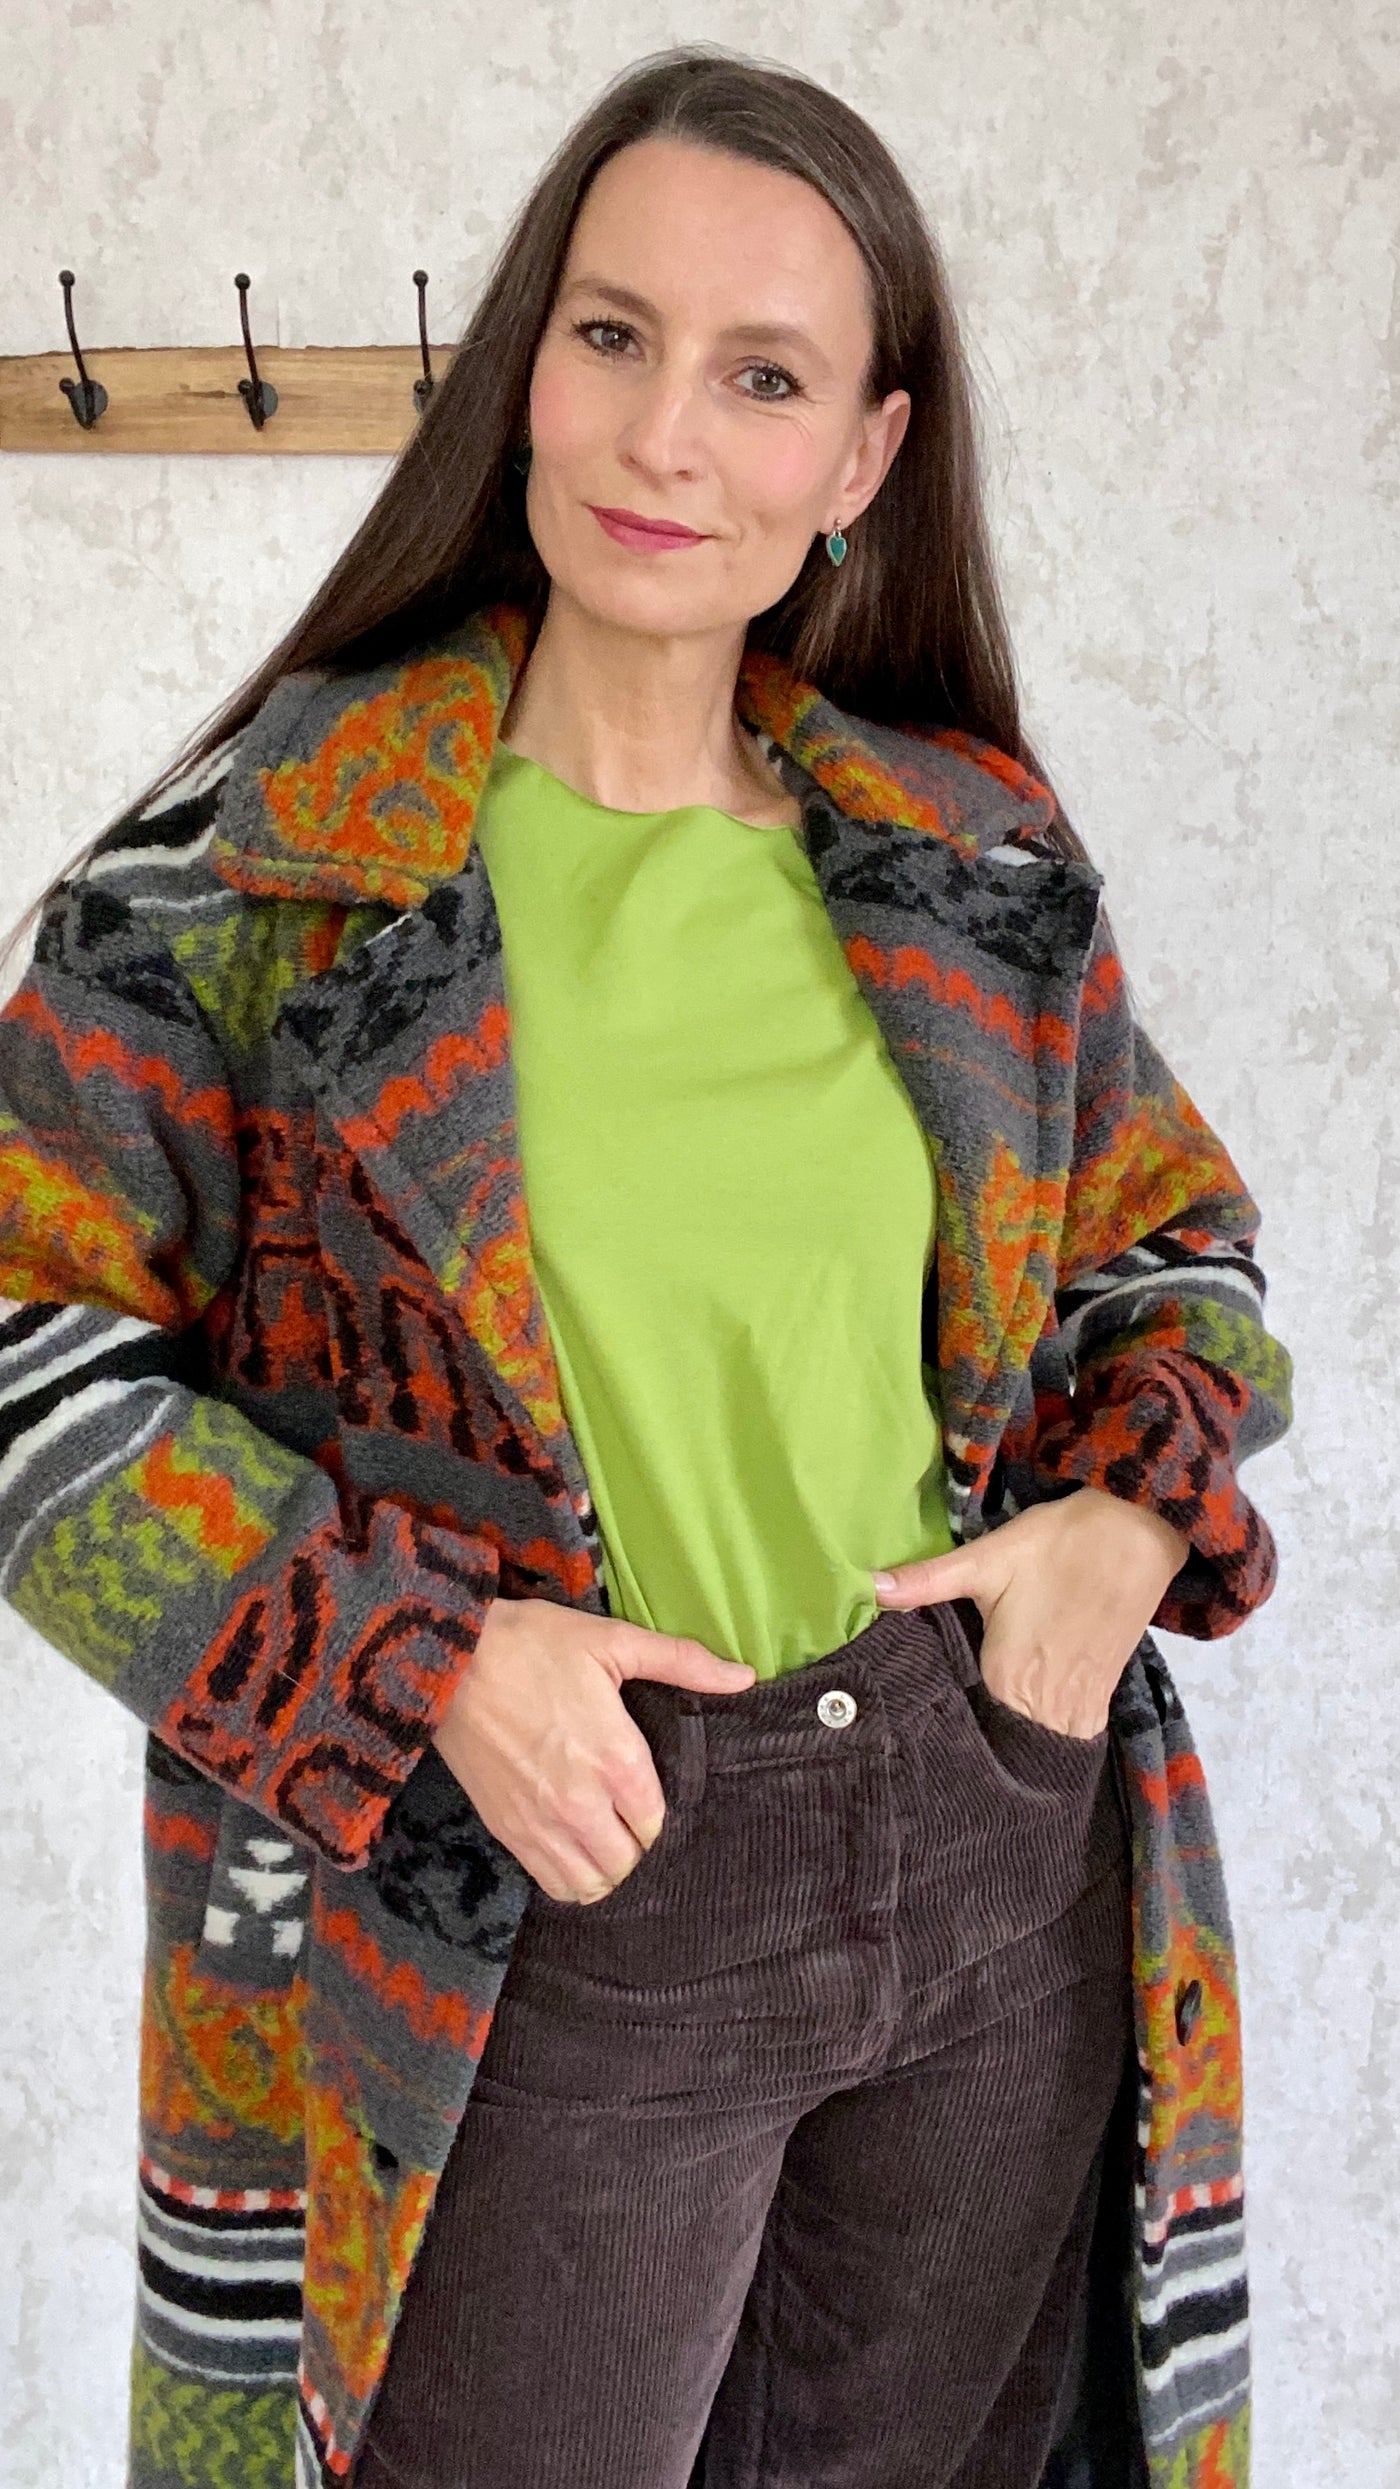 Schöner Azteken Mantel mit Muster orange, schwarz und grün.